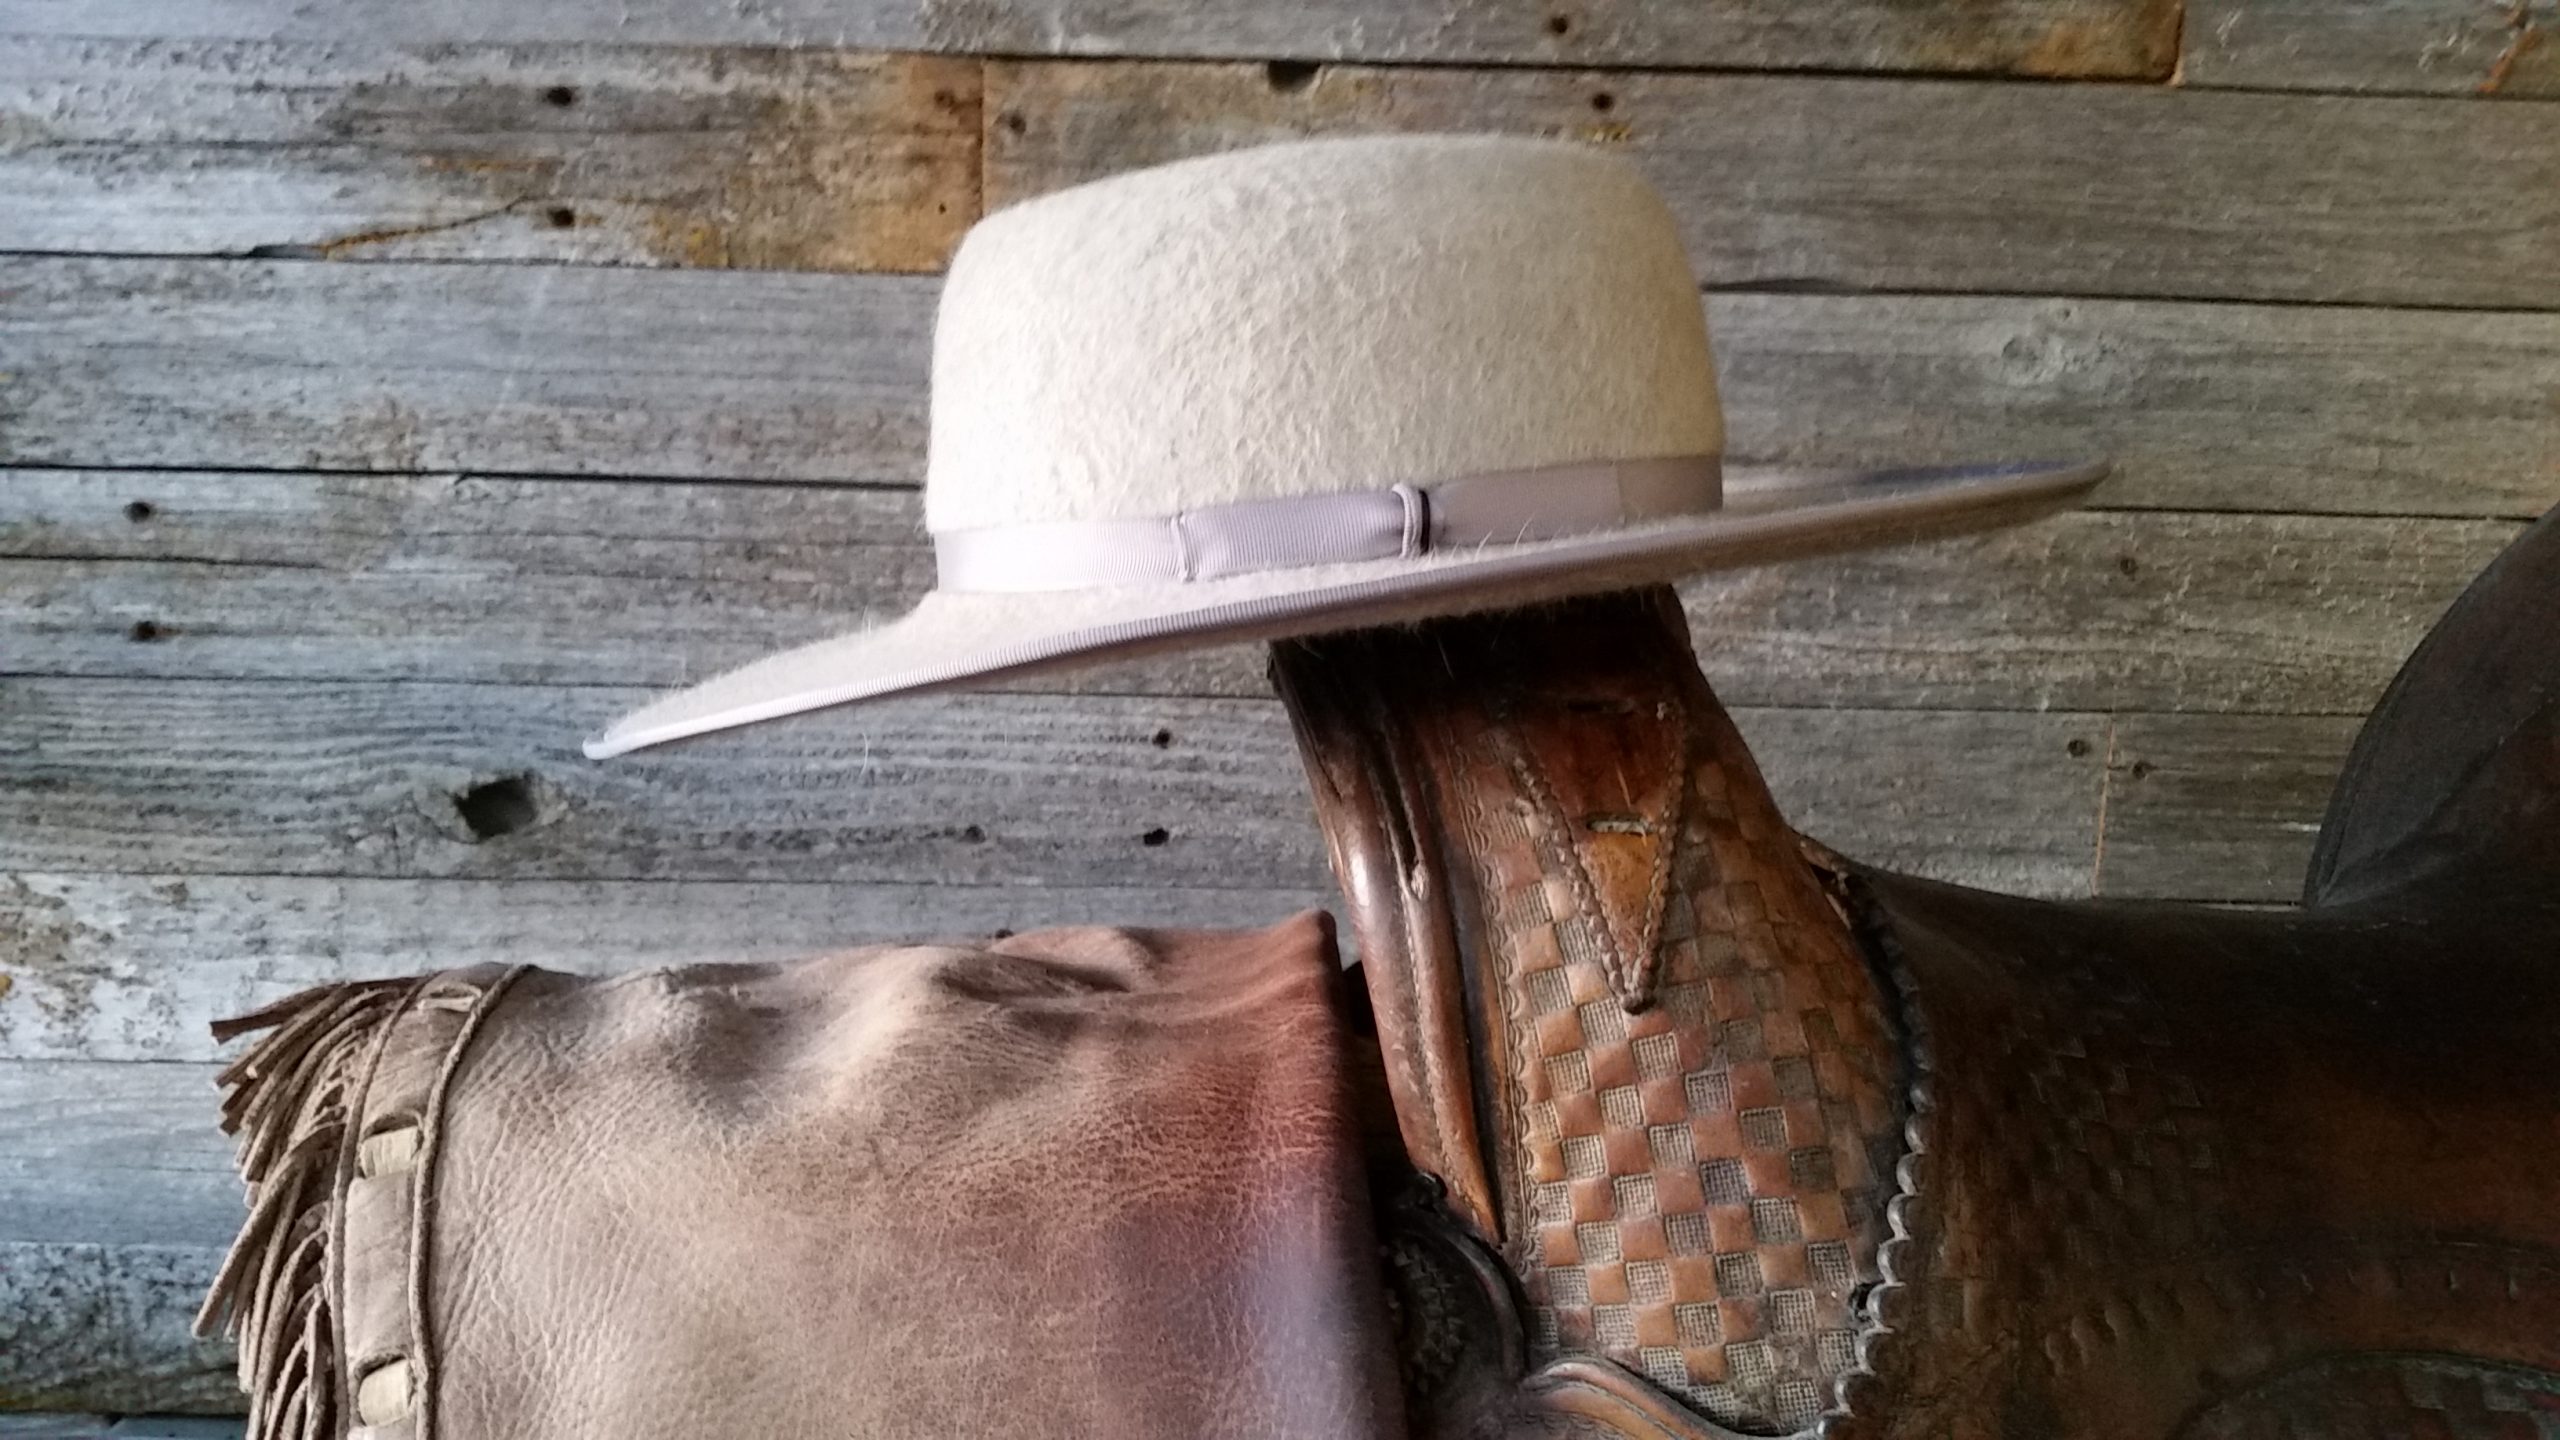 Buckaroo Hat Bands – Buckaroo Leather Products